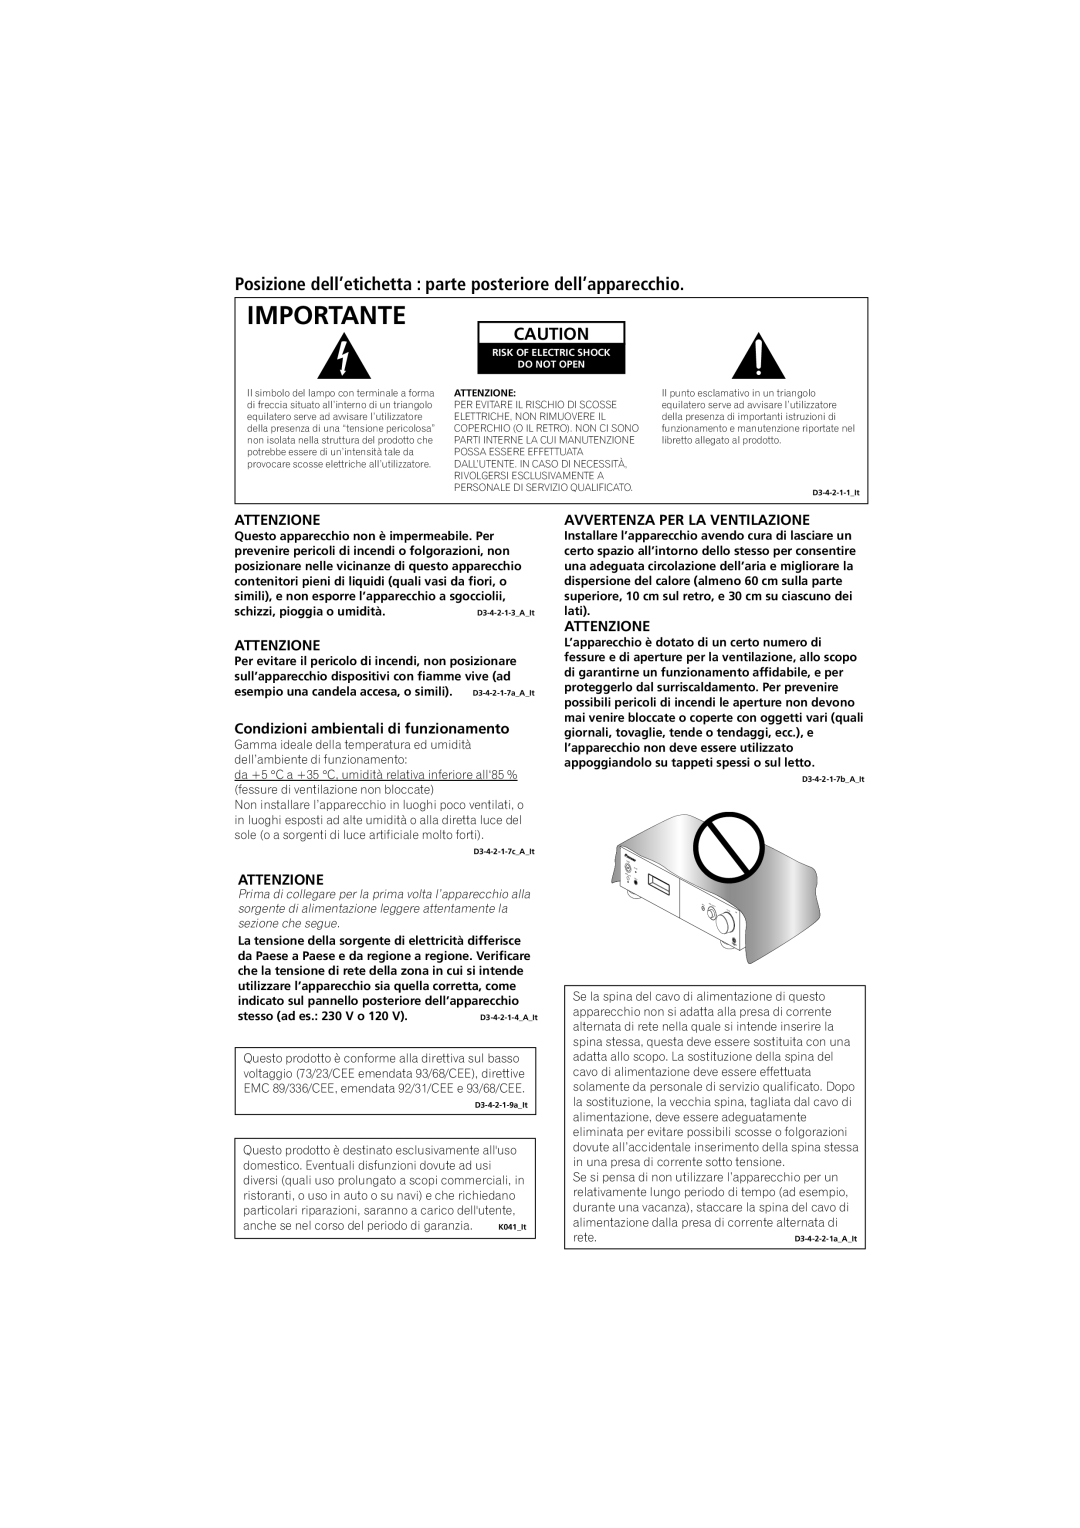 Pioneer A-A9-J manual Importante, Attenzione, Condizioni ambientali di funzionamento, Avvertenza Per La Ventilazione 